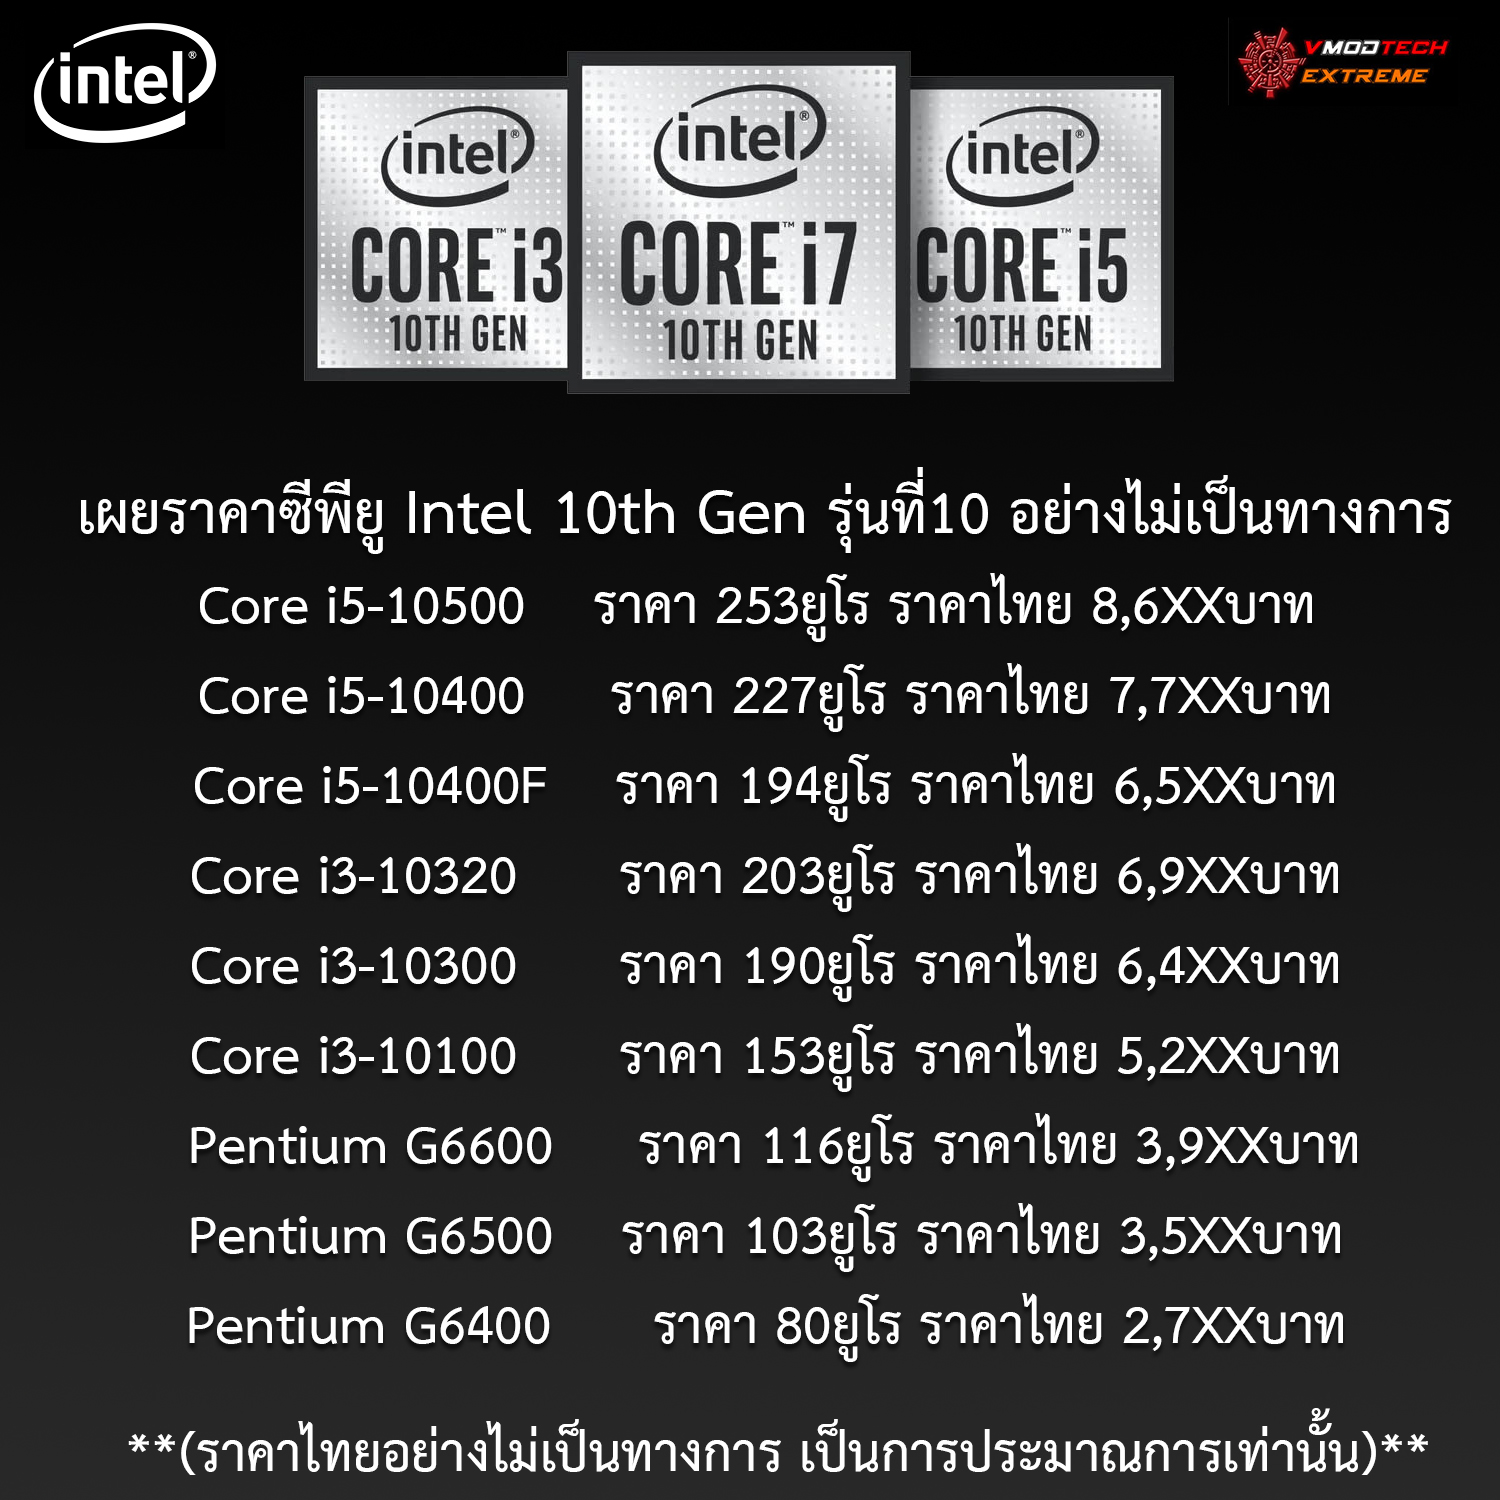 หลุด!! เผยราคาซีพียู Intel 10th Gen รุ่นที่10 อย่างไม่เป็นทางการ Core i5-10600 เริ่มที่ 279ยูโร หรือประมาณ 9,4XXบาทไทยโดยประมาณ 